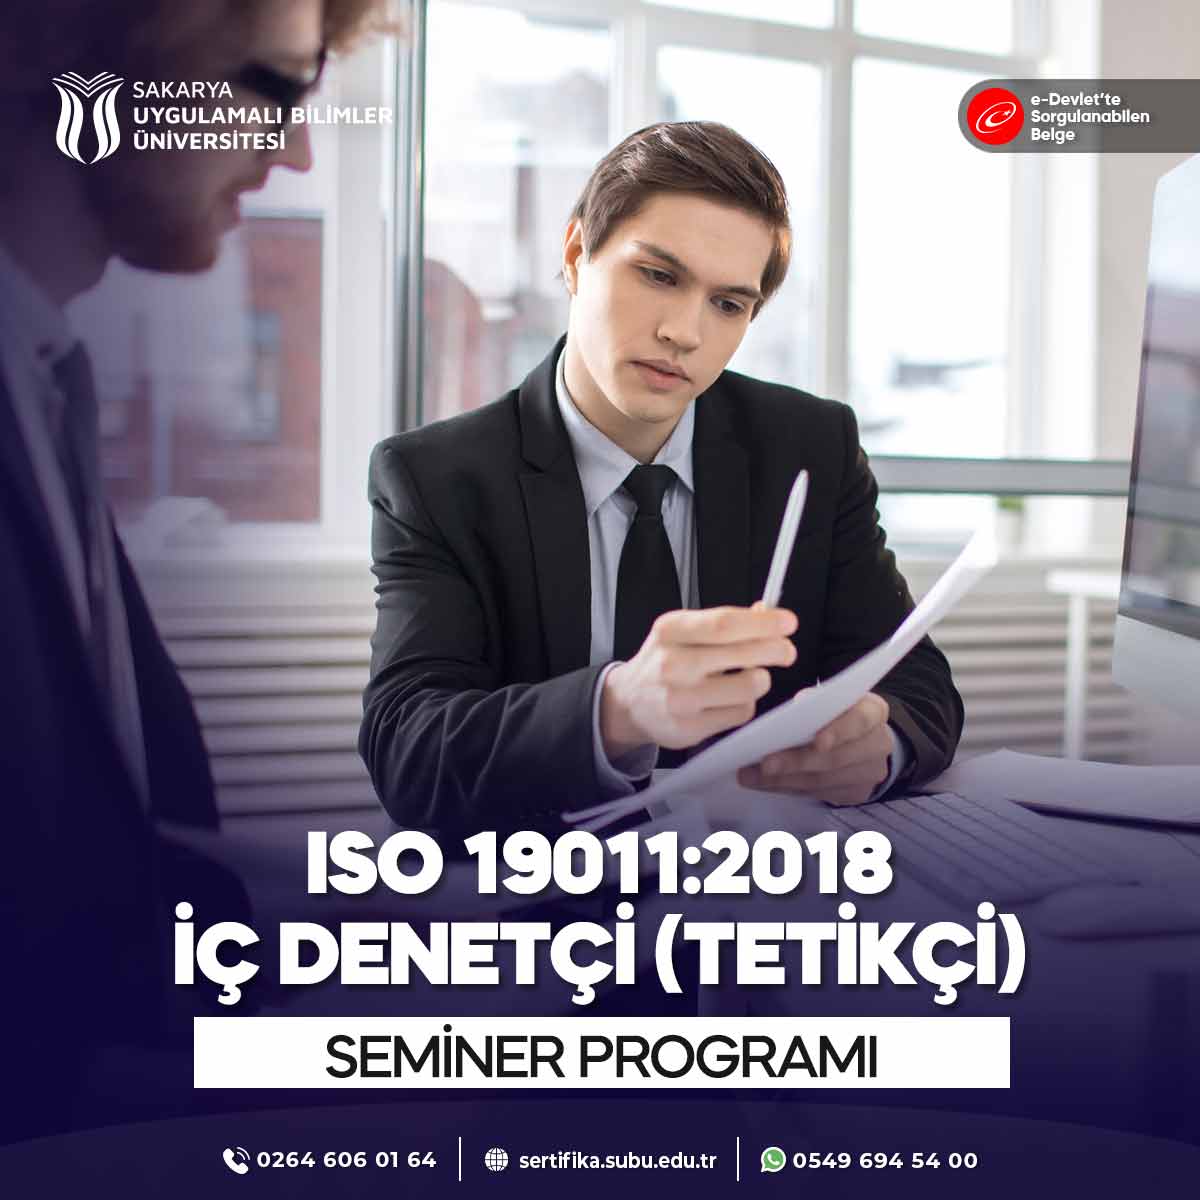 ISO 19011:2018 İç Denetçi - Tetkikçi Semineri